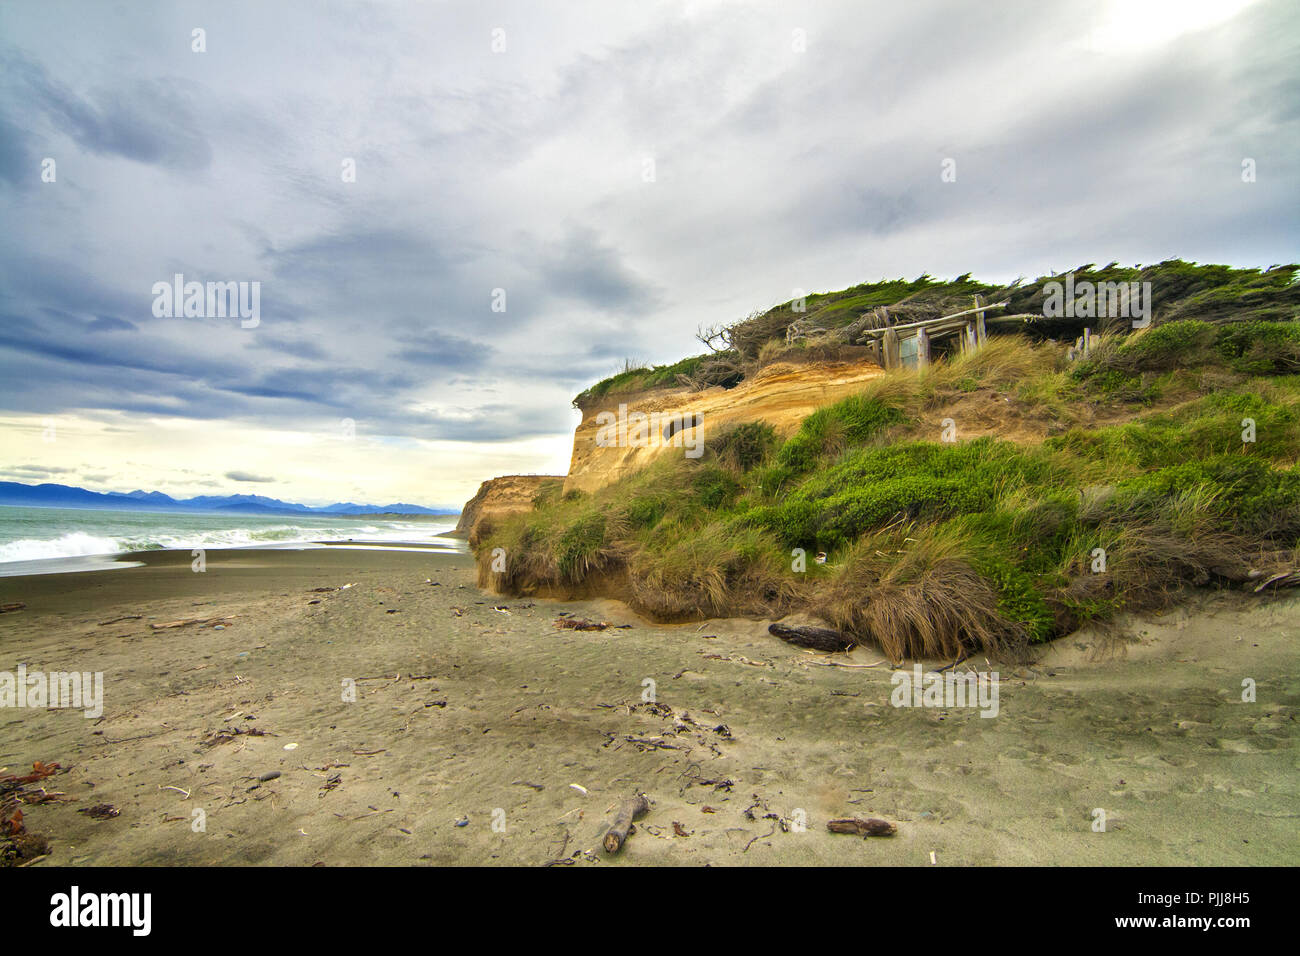 Spiaggia selvaggia dell'Oceano Pacifico meridionale con alberi a forma di vento, rocce rocciose e rifugio in legno sulla spiaggia di Catlins, Gemstone Beach, vicino a Orepuki in Nuova Zelanda Foto Stock